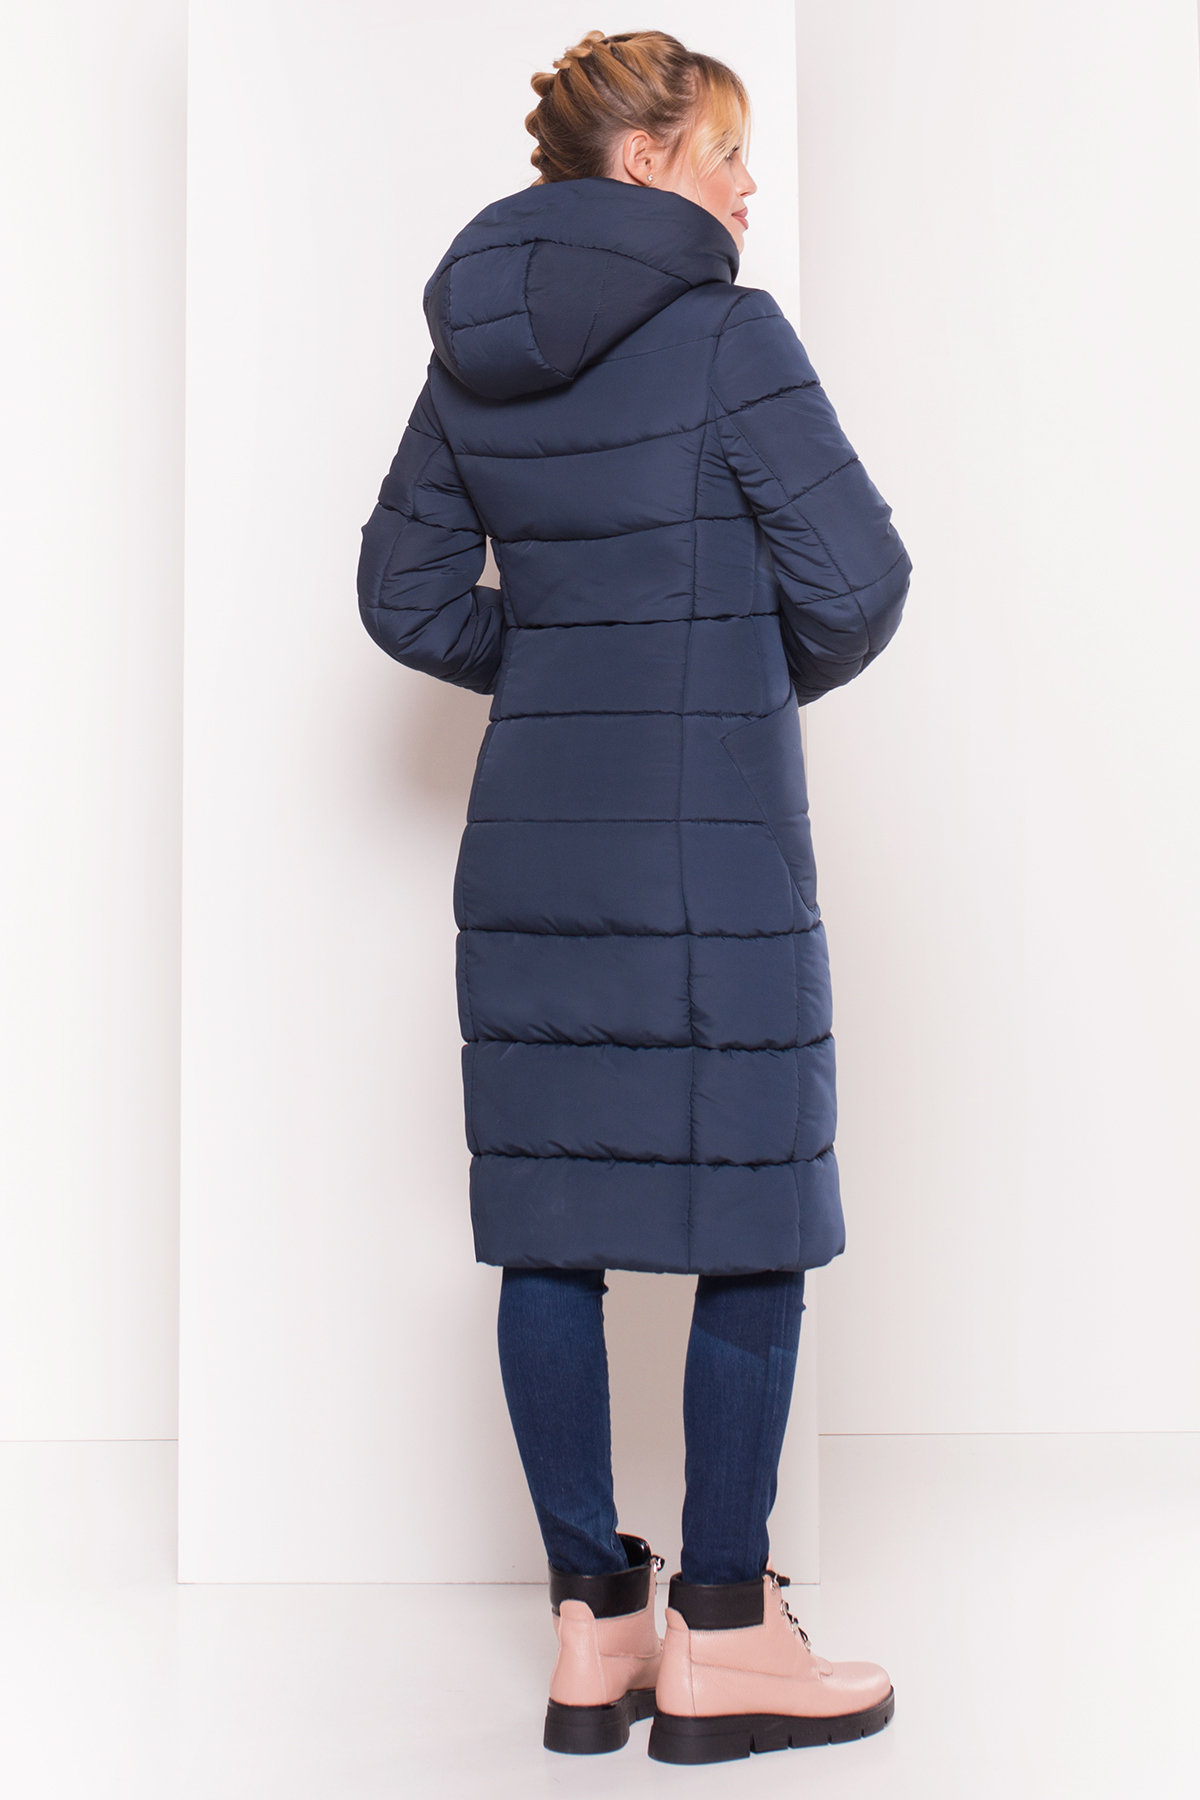 Пуховик-пальто с поясом Жако 5540 АРТ. 38050 Цвет: Темно-синий - фото 2, интернет магазин tm-modus.ru